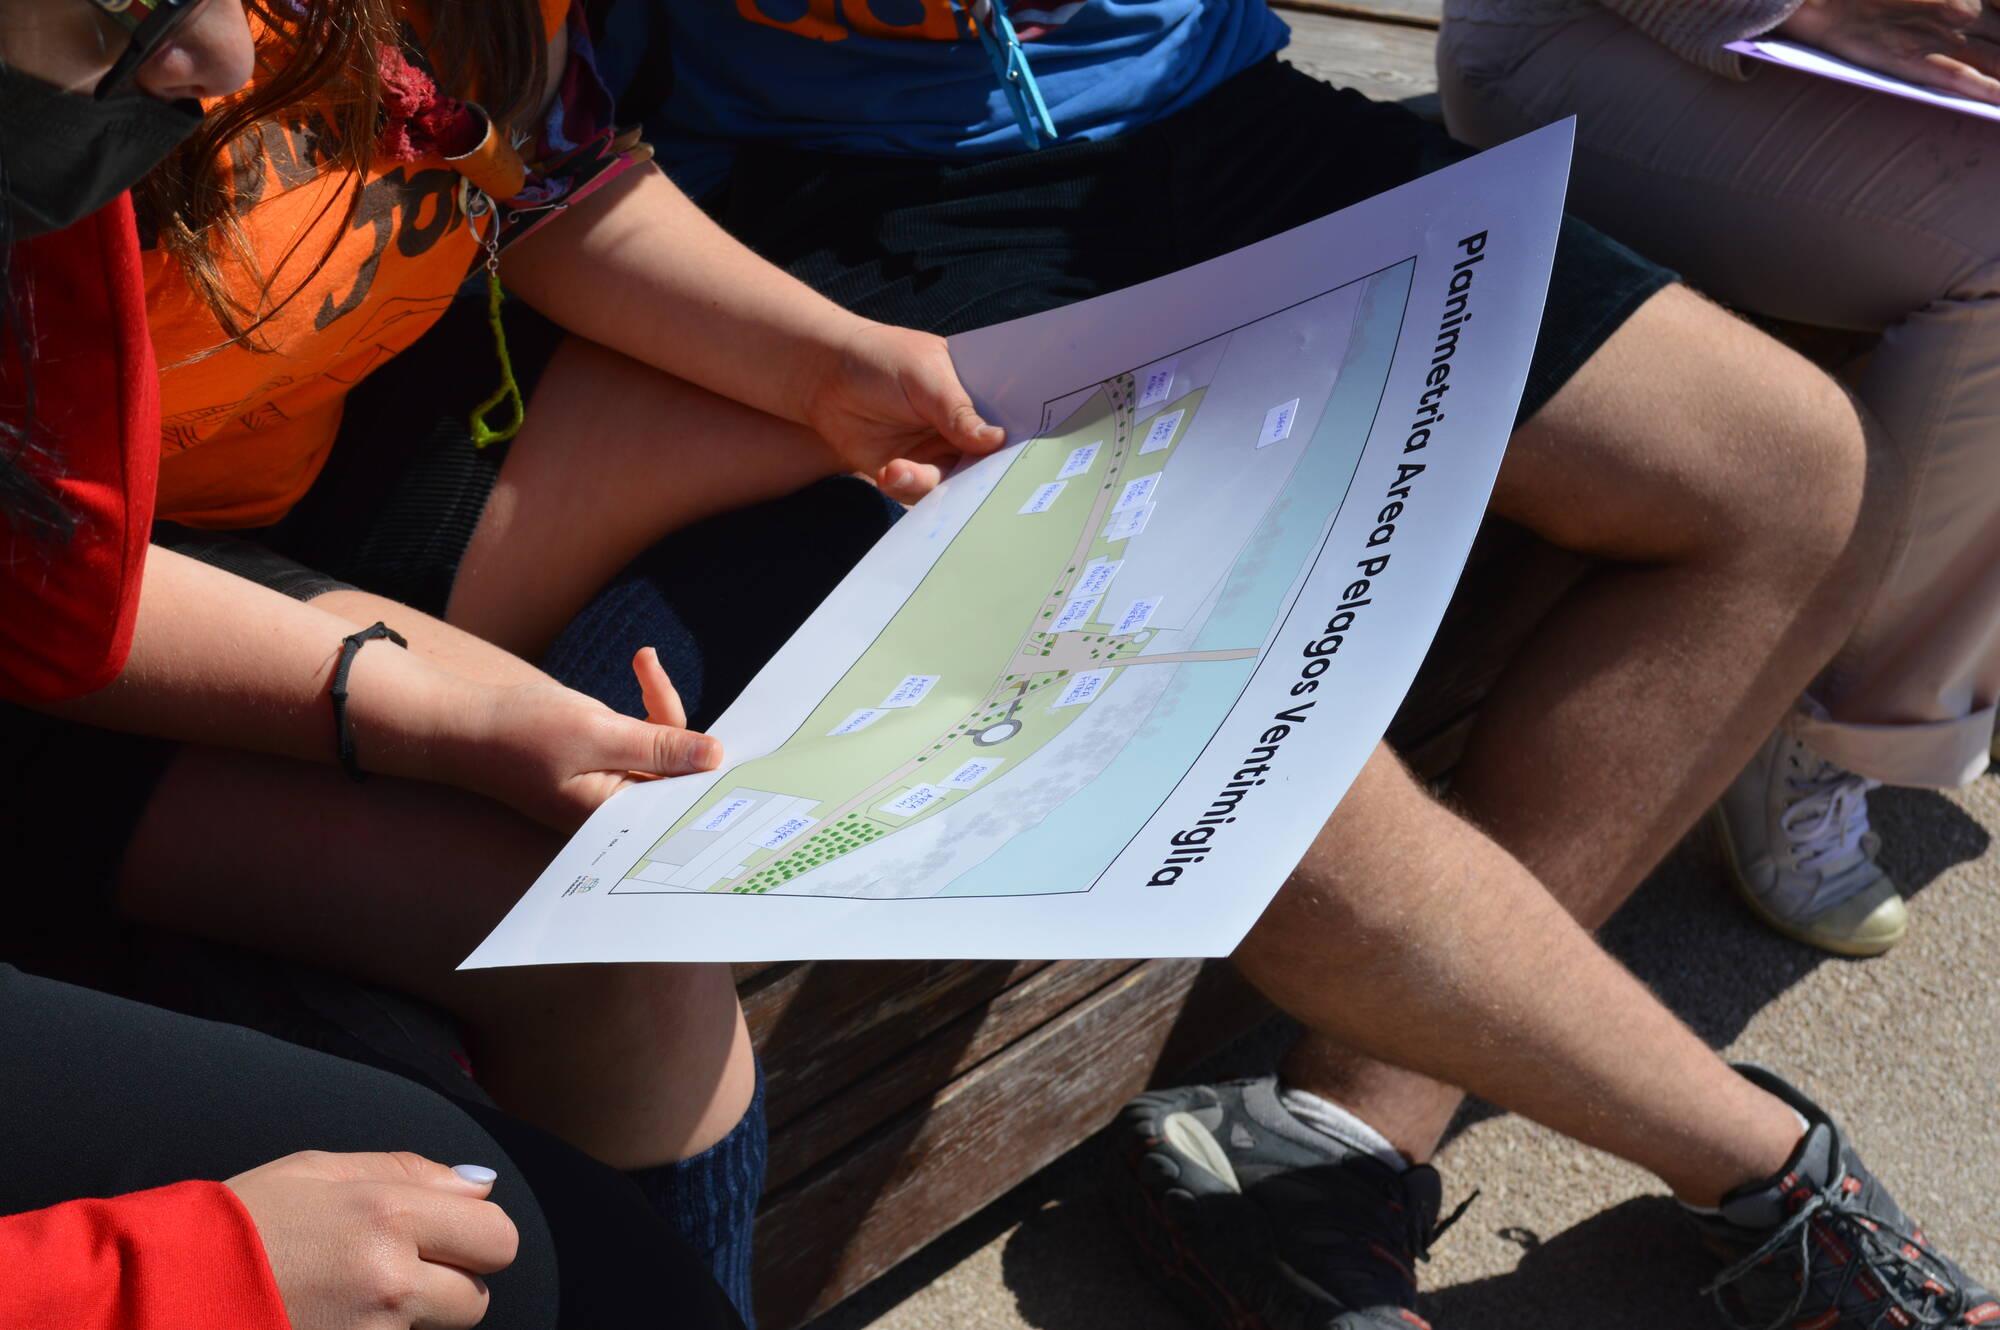 I partecipanti del progetto "lo spazio pubblico" studiano una mappa dell'area Pelagos, a Ventimiglia